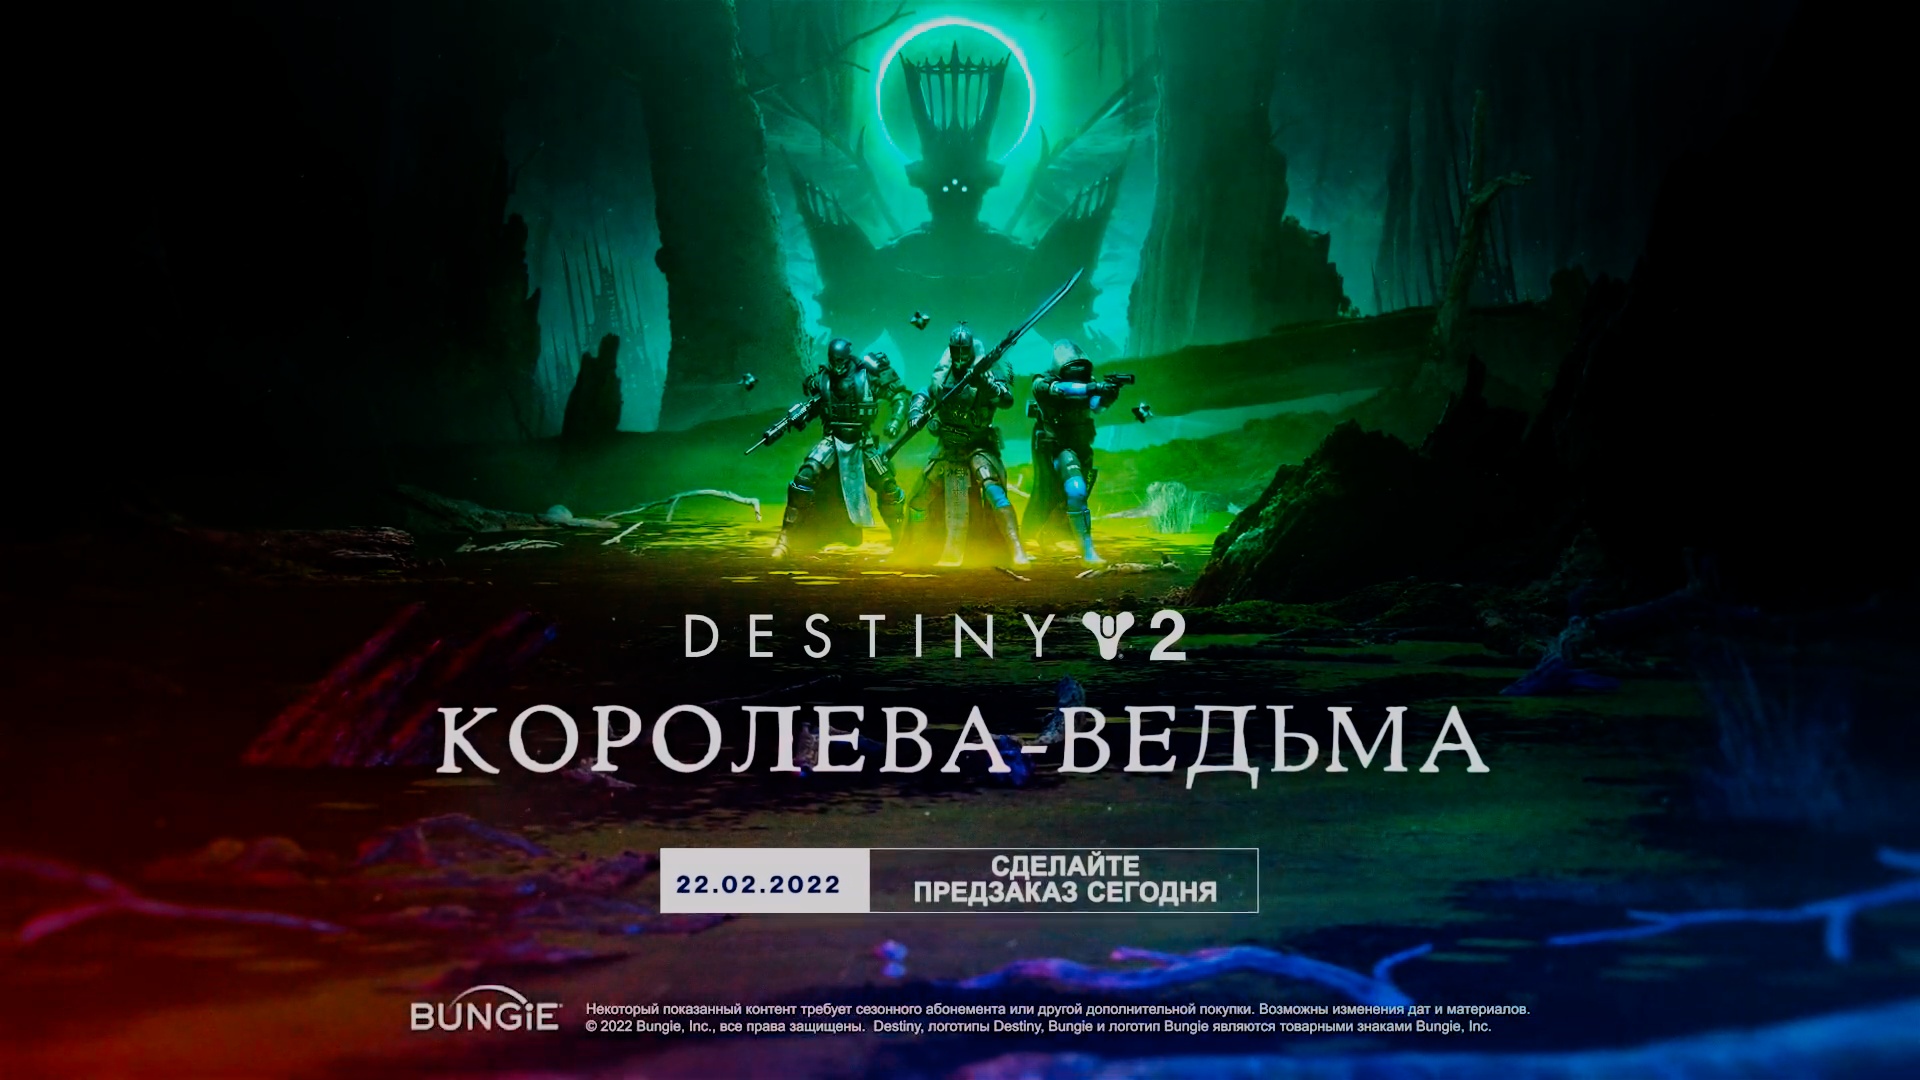 Destiny 2: Королева-ведьма - Русский трейлер дополнения. Релиз 22 февраля 2022.